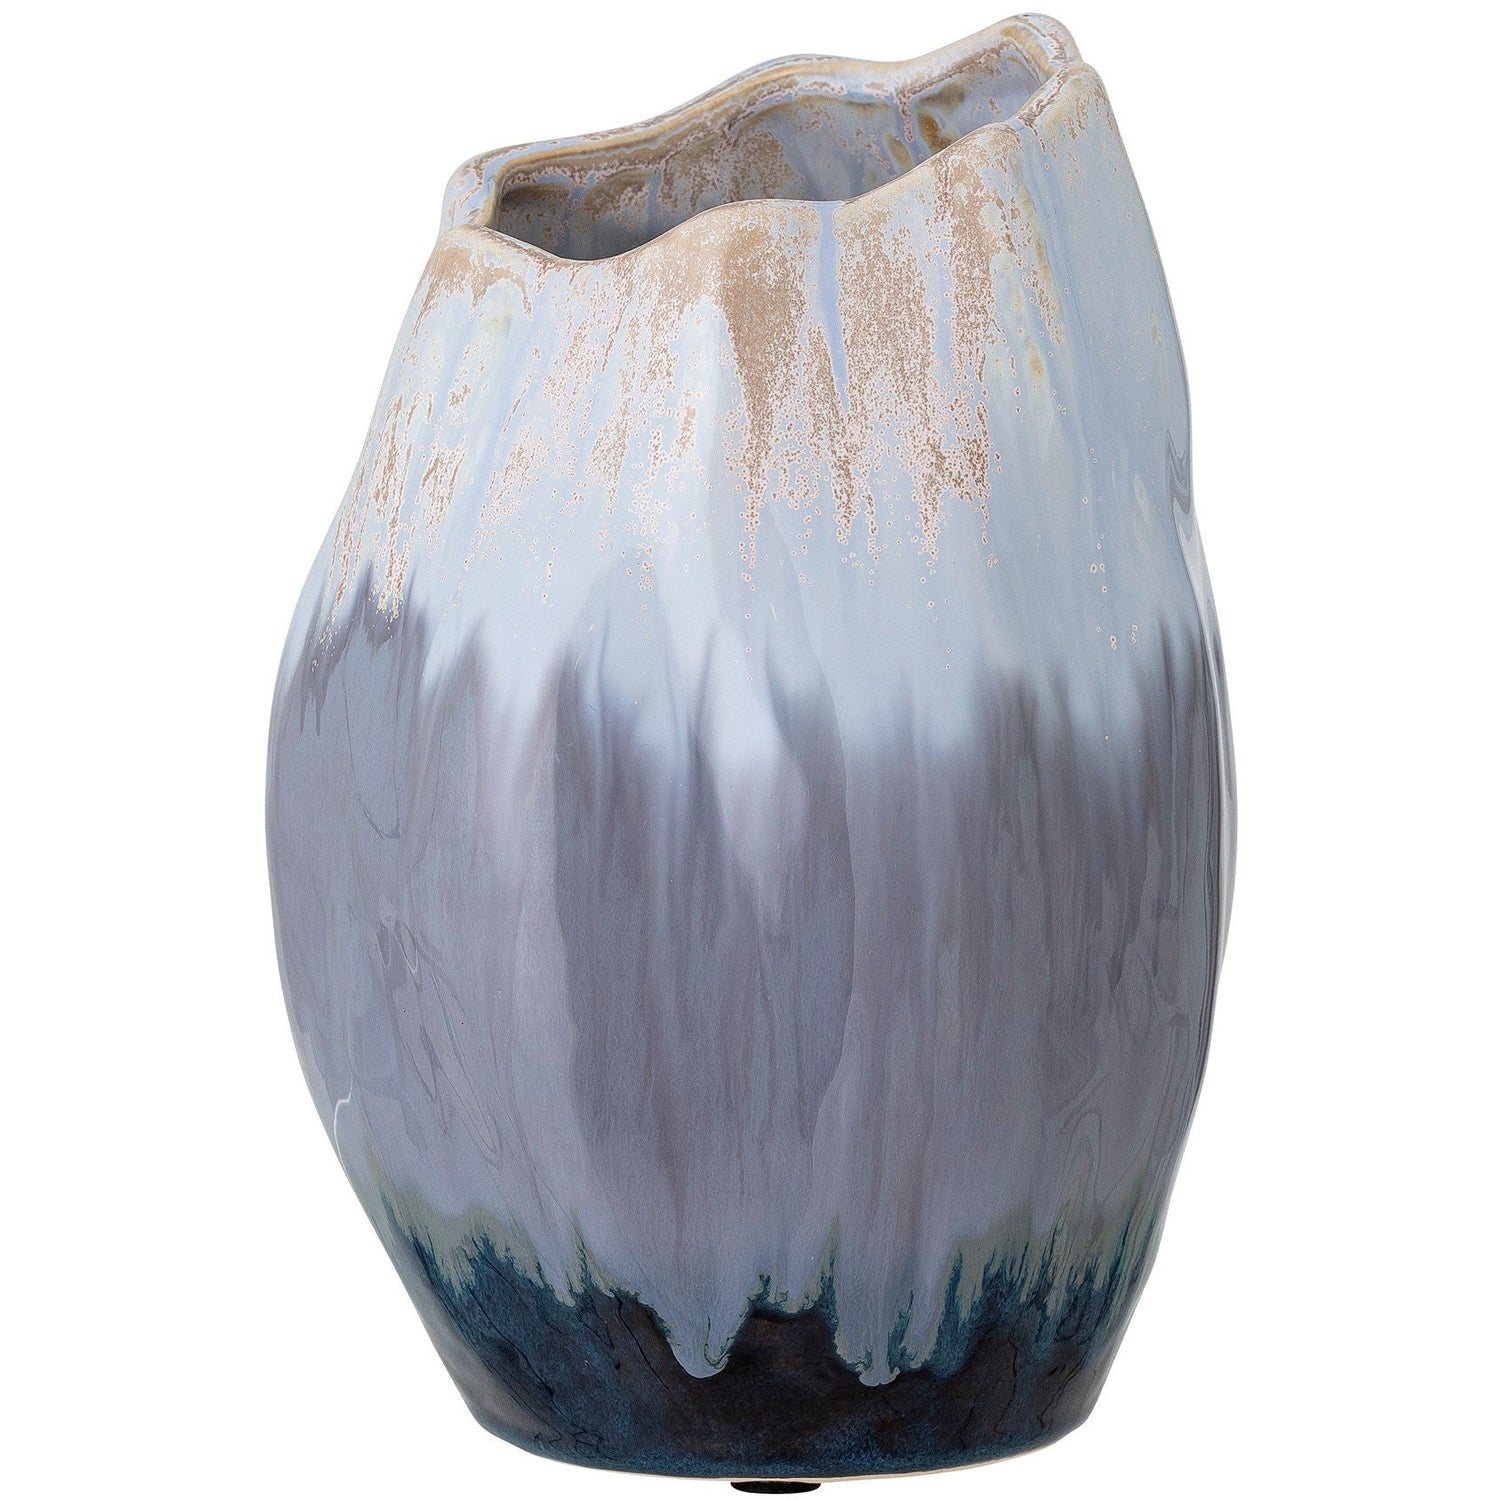 Bloomingville Jace Deco maljakko, Blå, Keramik